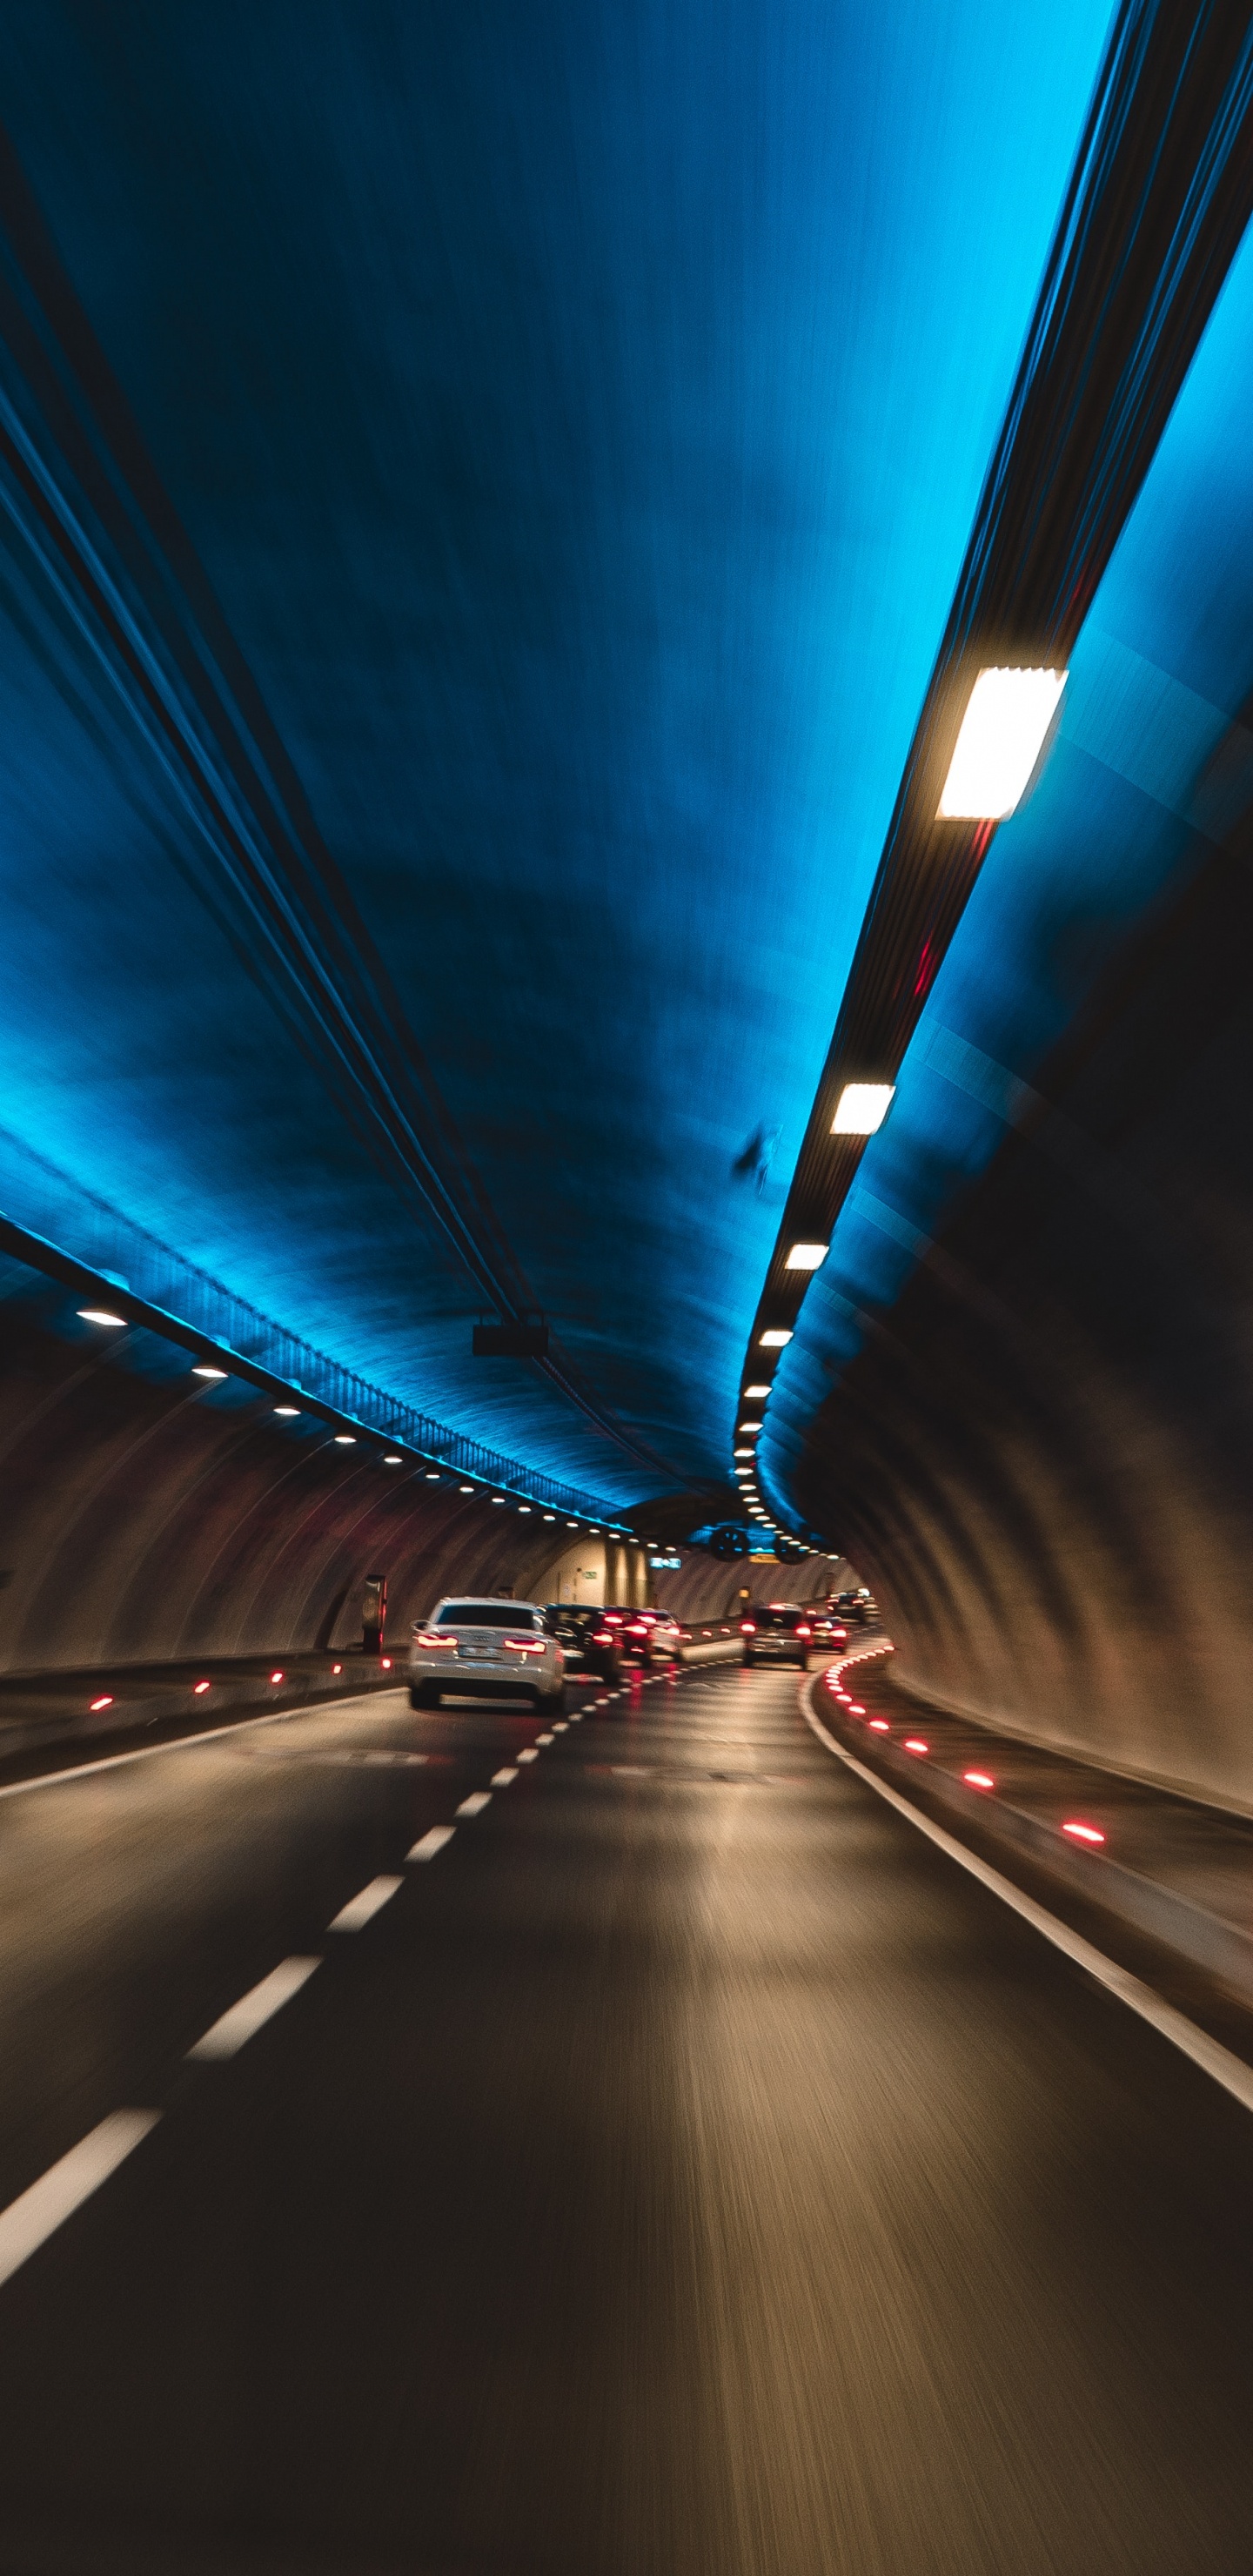 Lumière Bleue Dans le Tunnel Pendant la Nuit. Wallpaper in 1440x2960 Resolution